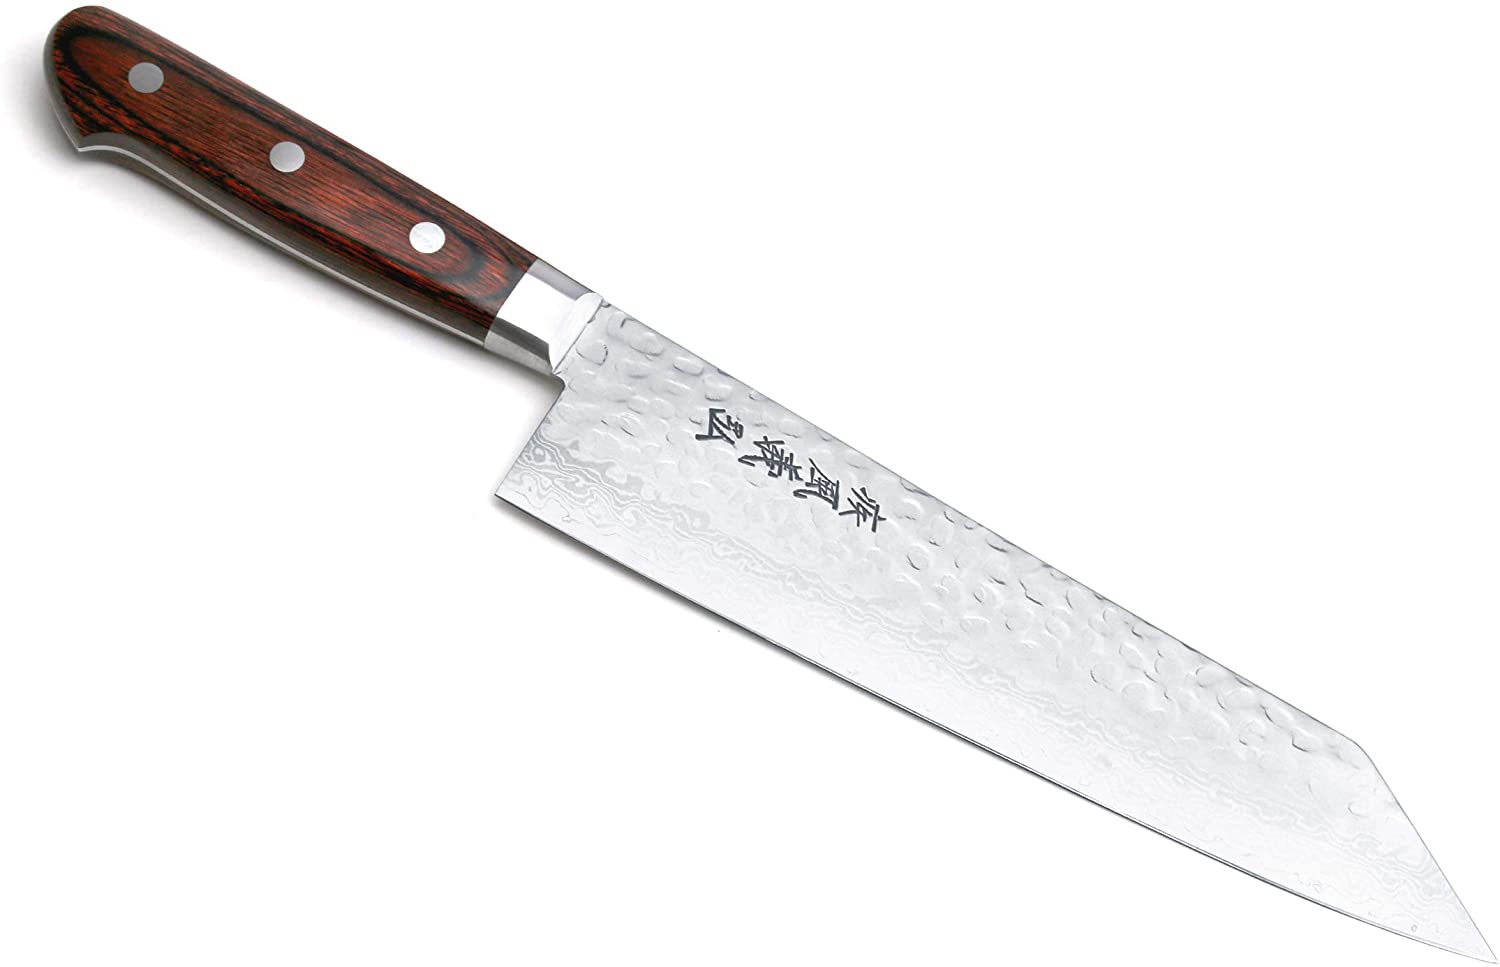 Best modern construction kiritsuke knife- Yoshihiro VG-10 Knife